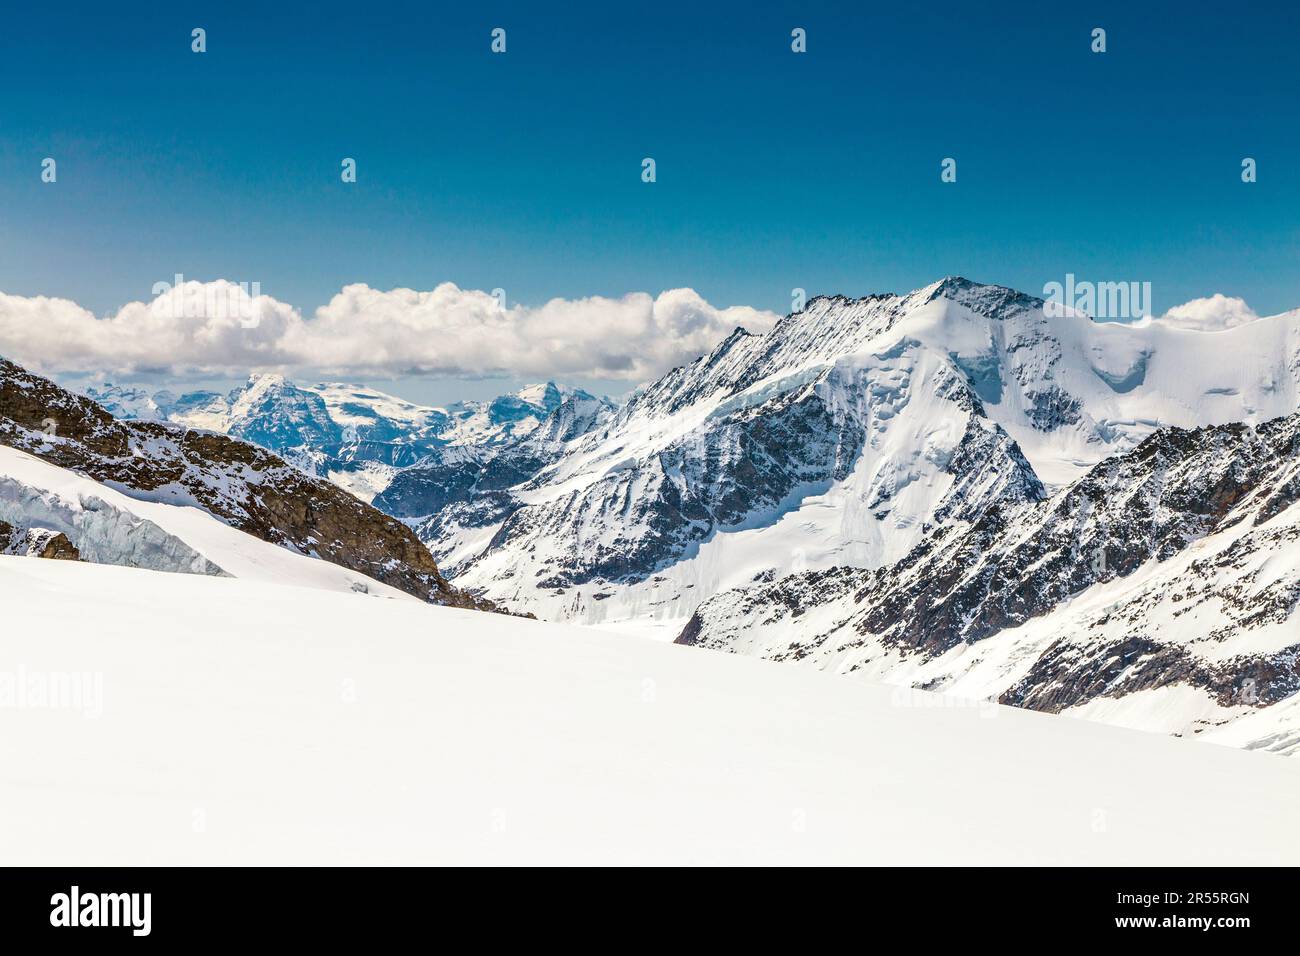 Sentiero escursionistico dalla cima della Jungfrau al rifugio Mönchsjoch, vista sulle montagne (Dreieckhorn) e sul ghiacciaio Aletsch, Alpi svizzere, Svizzera Foto Stock